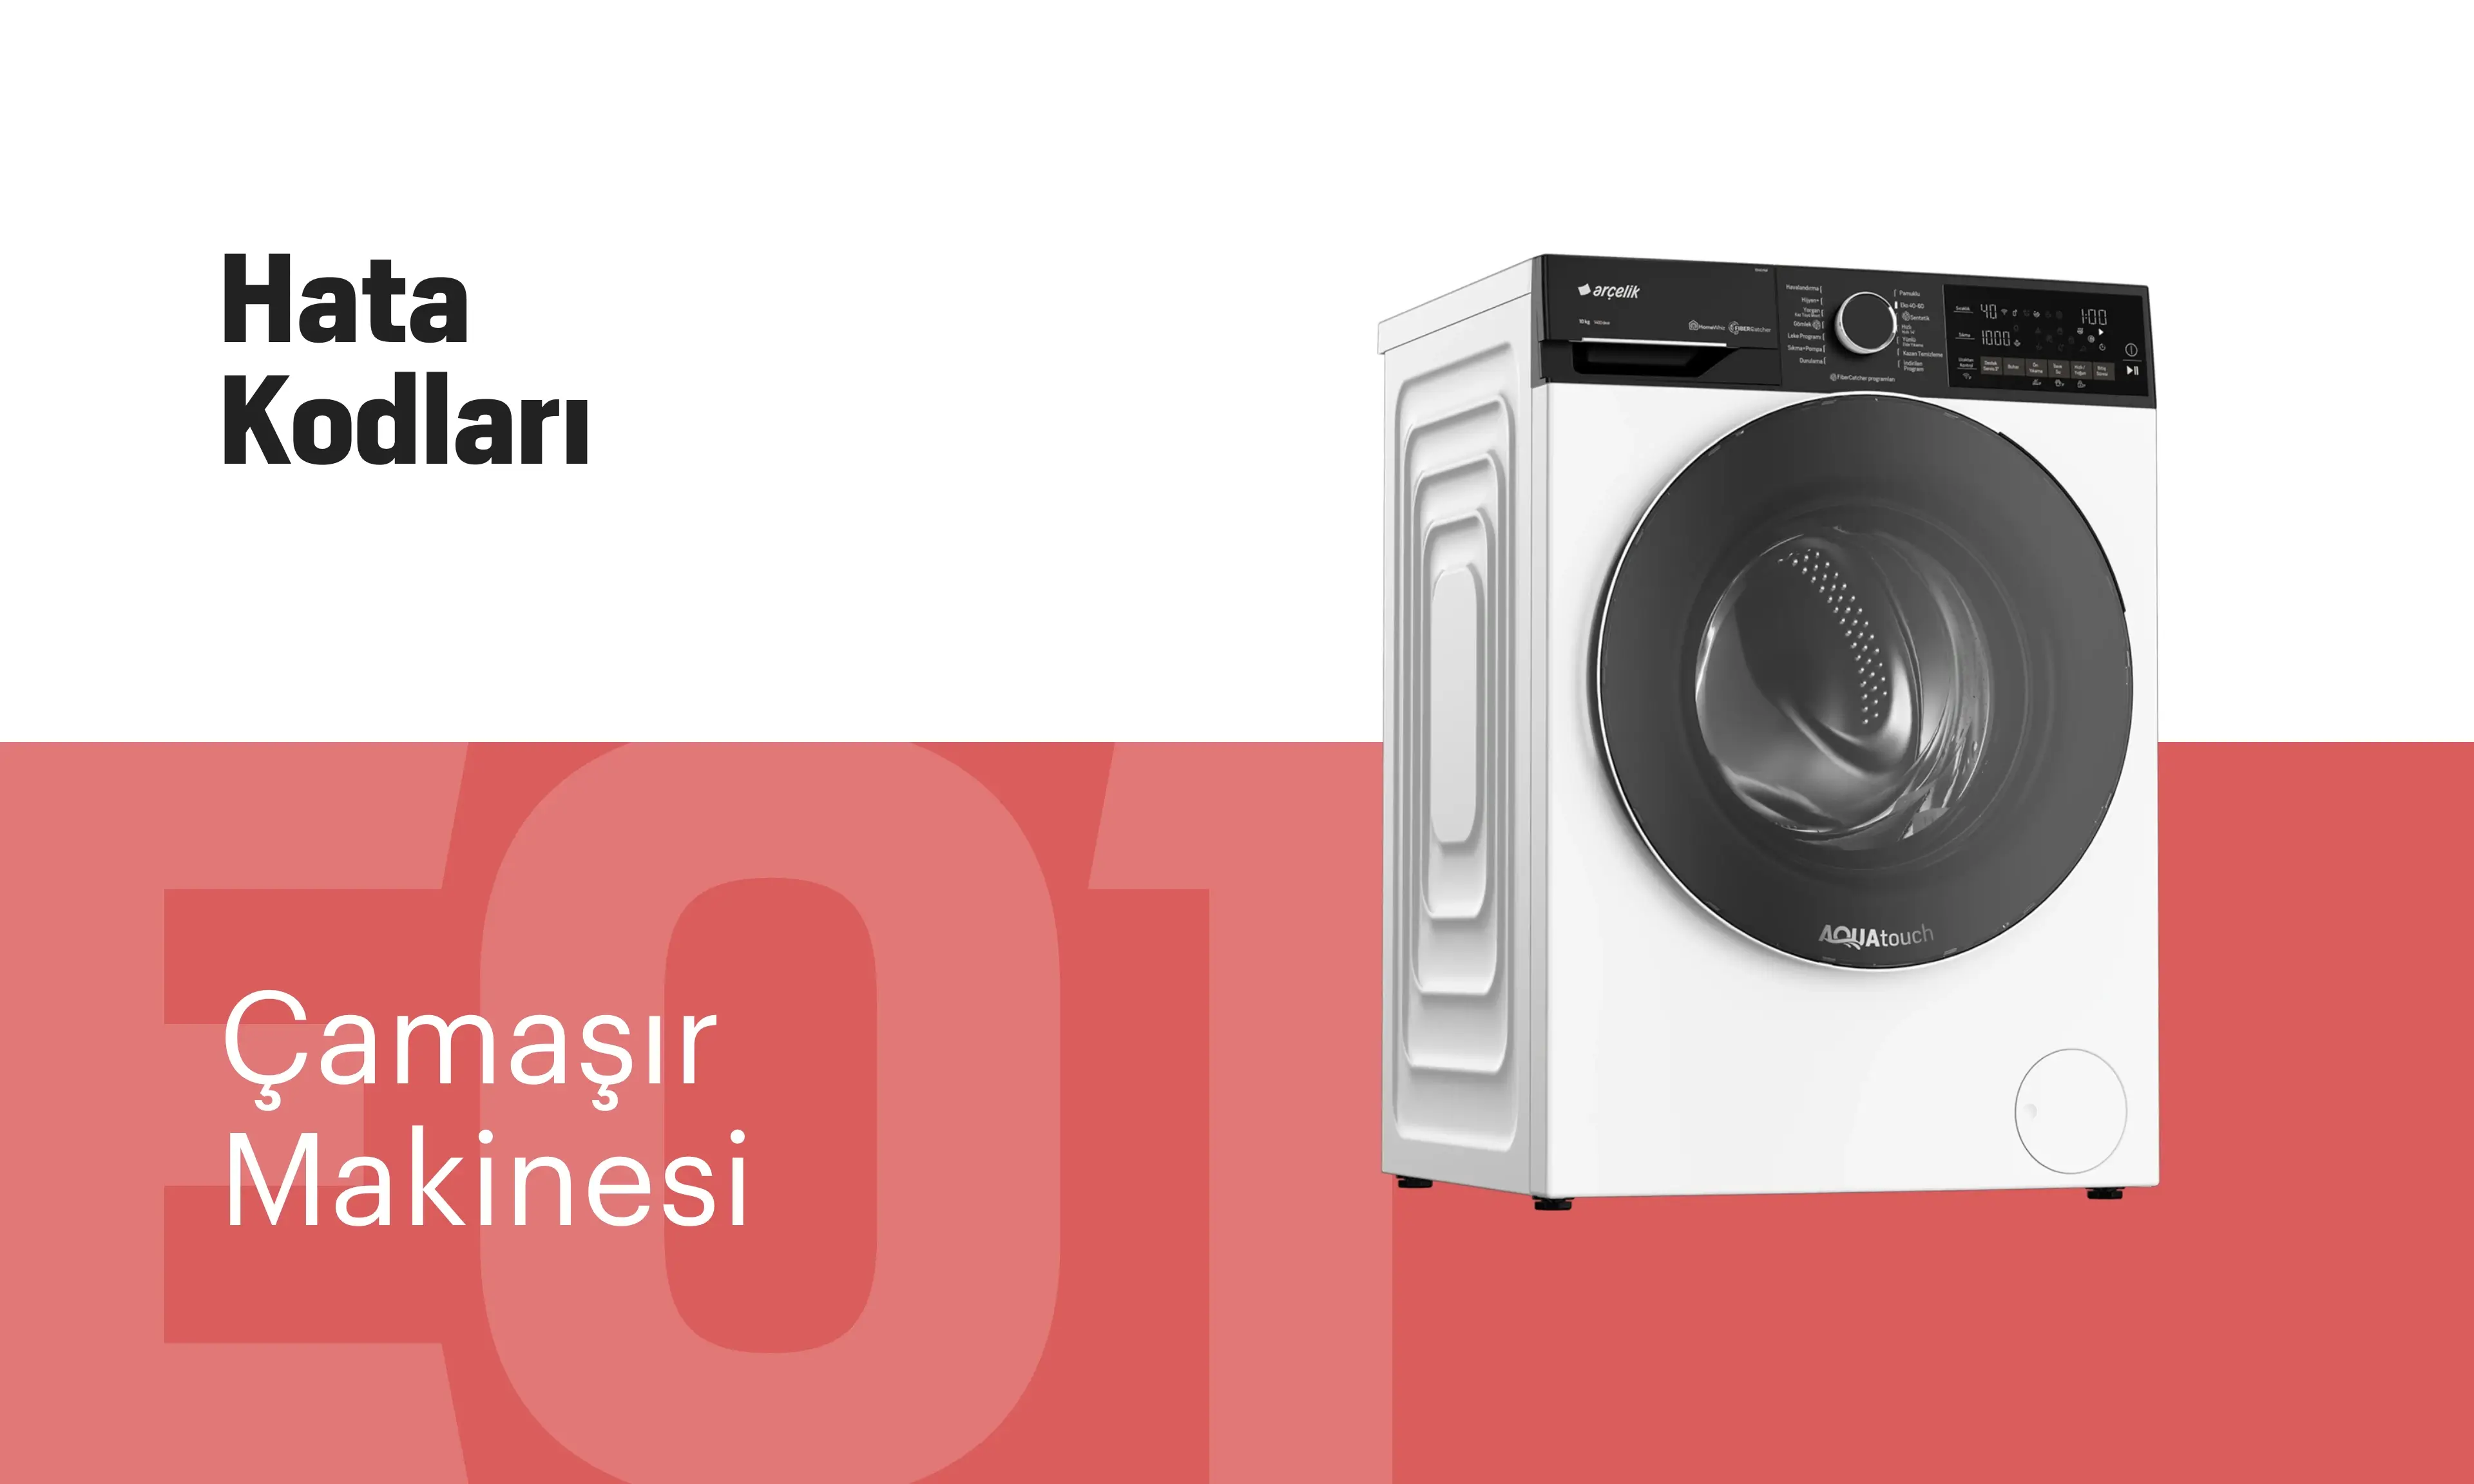 Çamaşır Makinesi Hata Kodları: Nedir, Nasıl Çözülür?